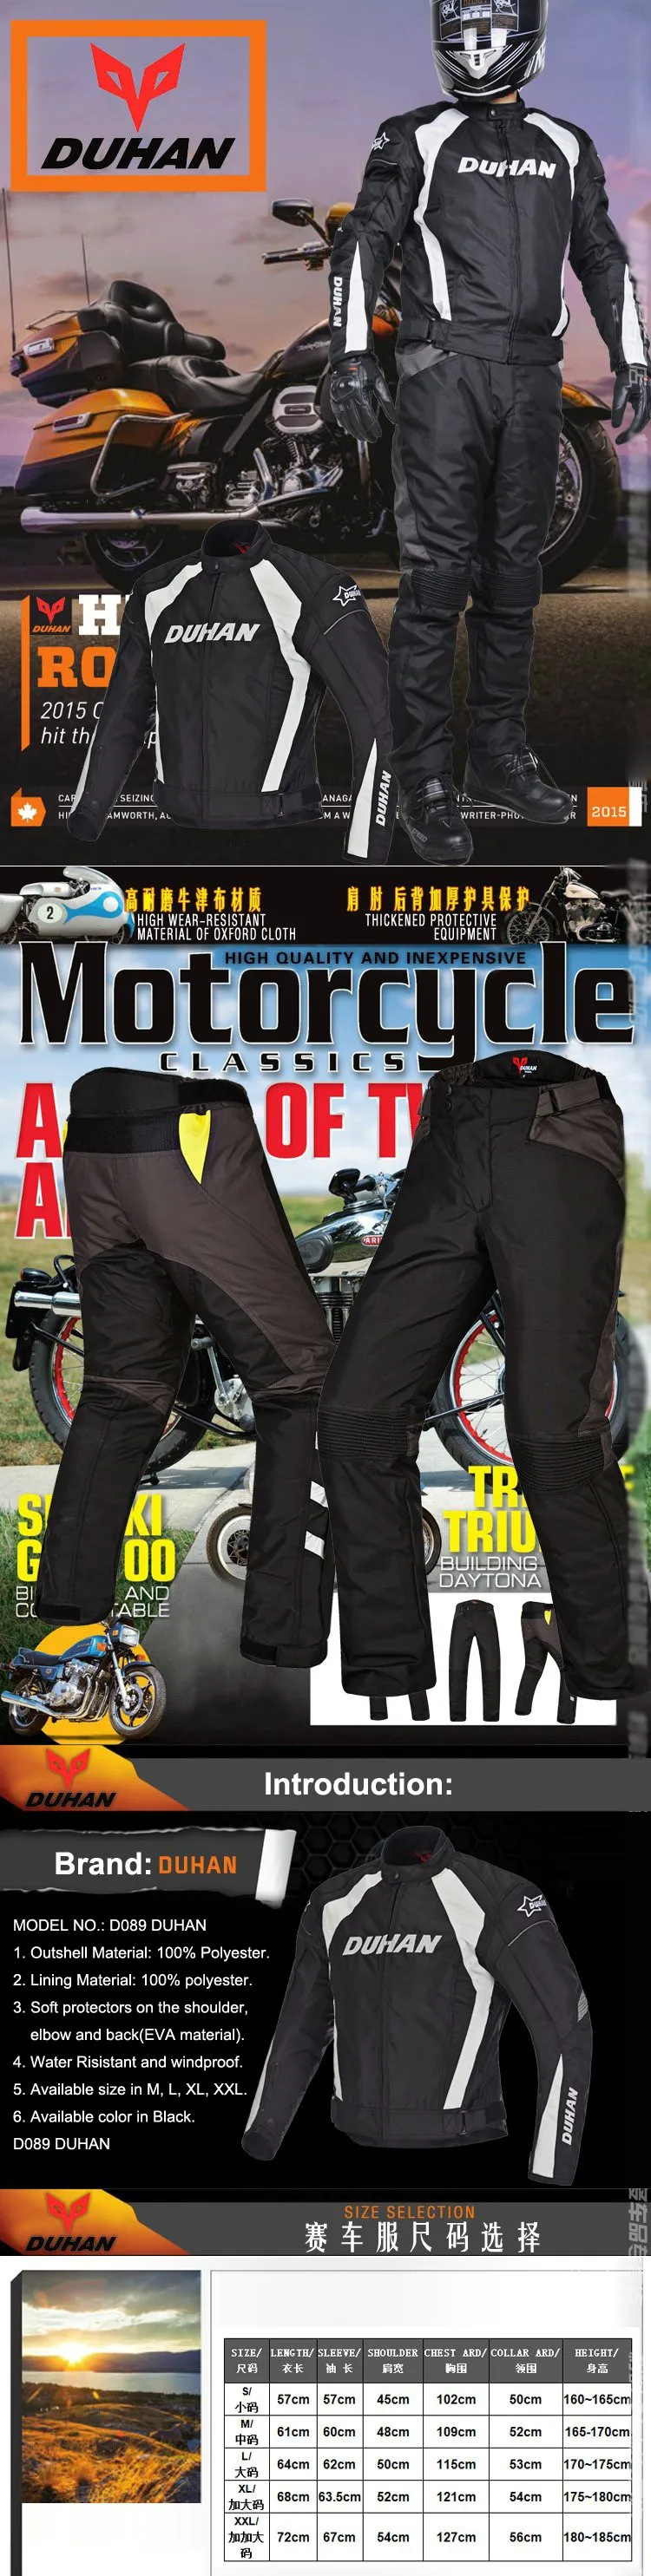 DUHAN, бренд Мотокросс мотоциклистов D089+ DK015 мотоциклетный костюм зимняя утепленная куртка мотоциклетная куртка+ Штаны мотор костюм для ралли